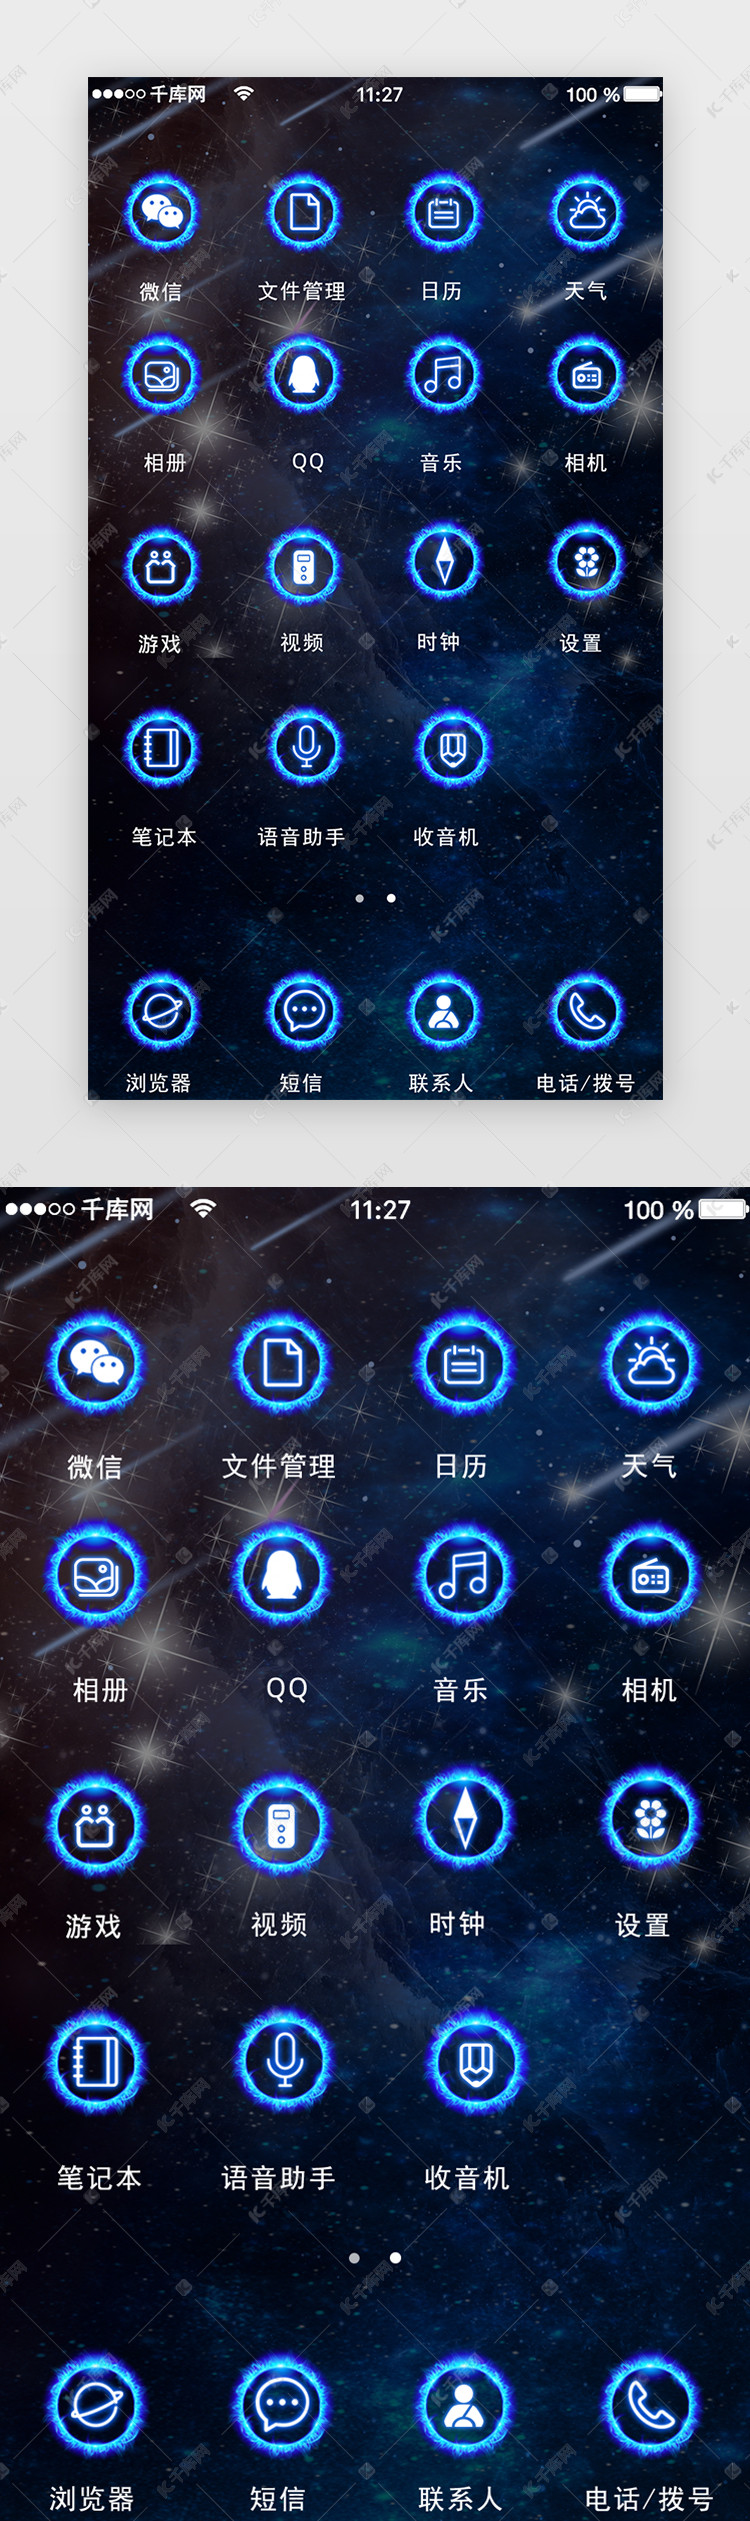 蓝色炫酷个性手机app主题桌面